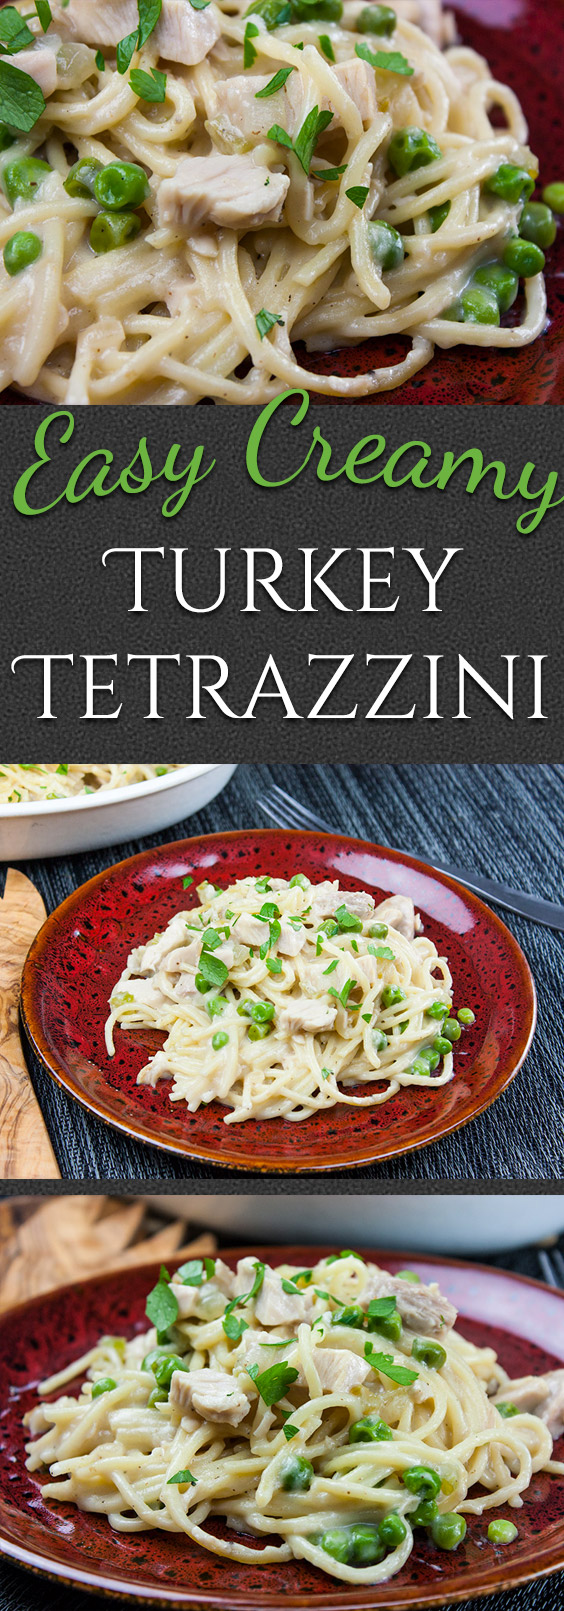 Easy Creamy Turkey Tetrazzini -   19 turkey tetrazzini recipe easy healthy ideas